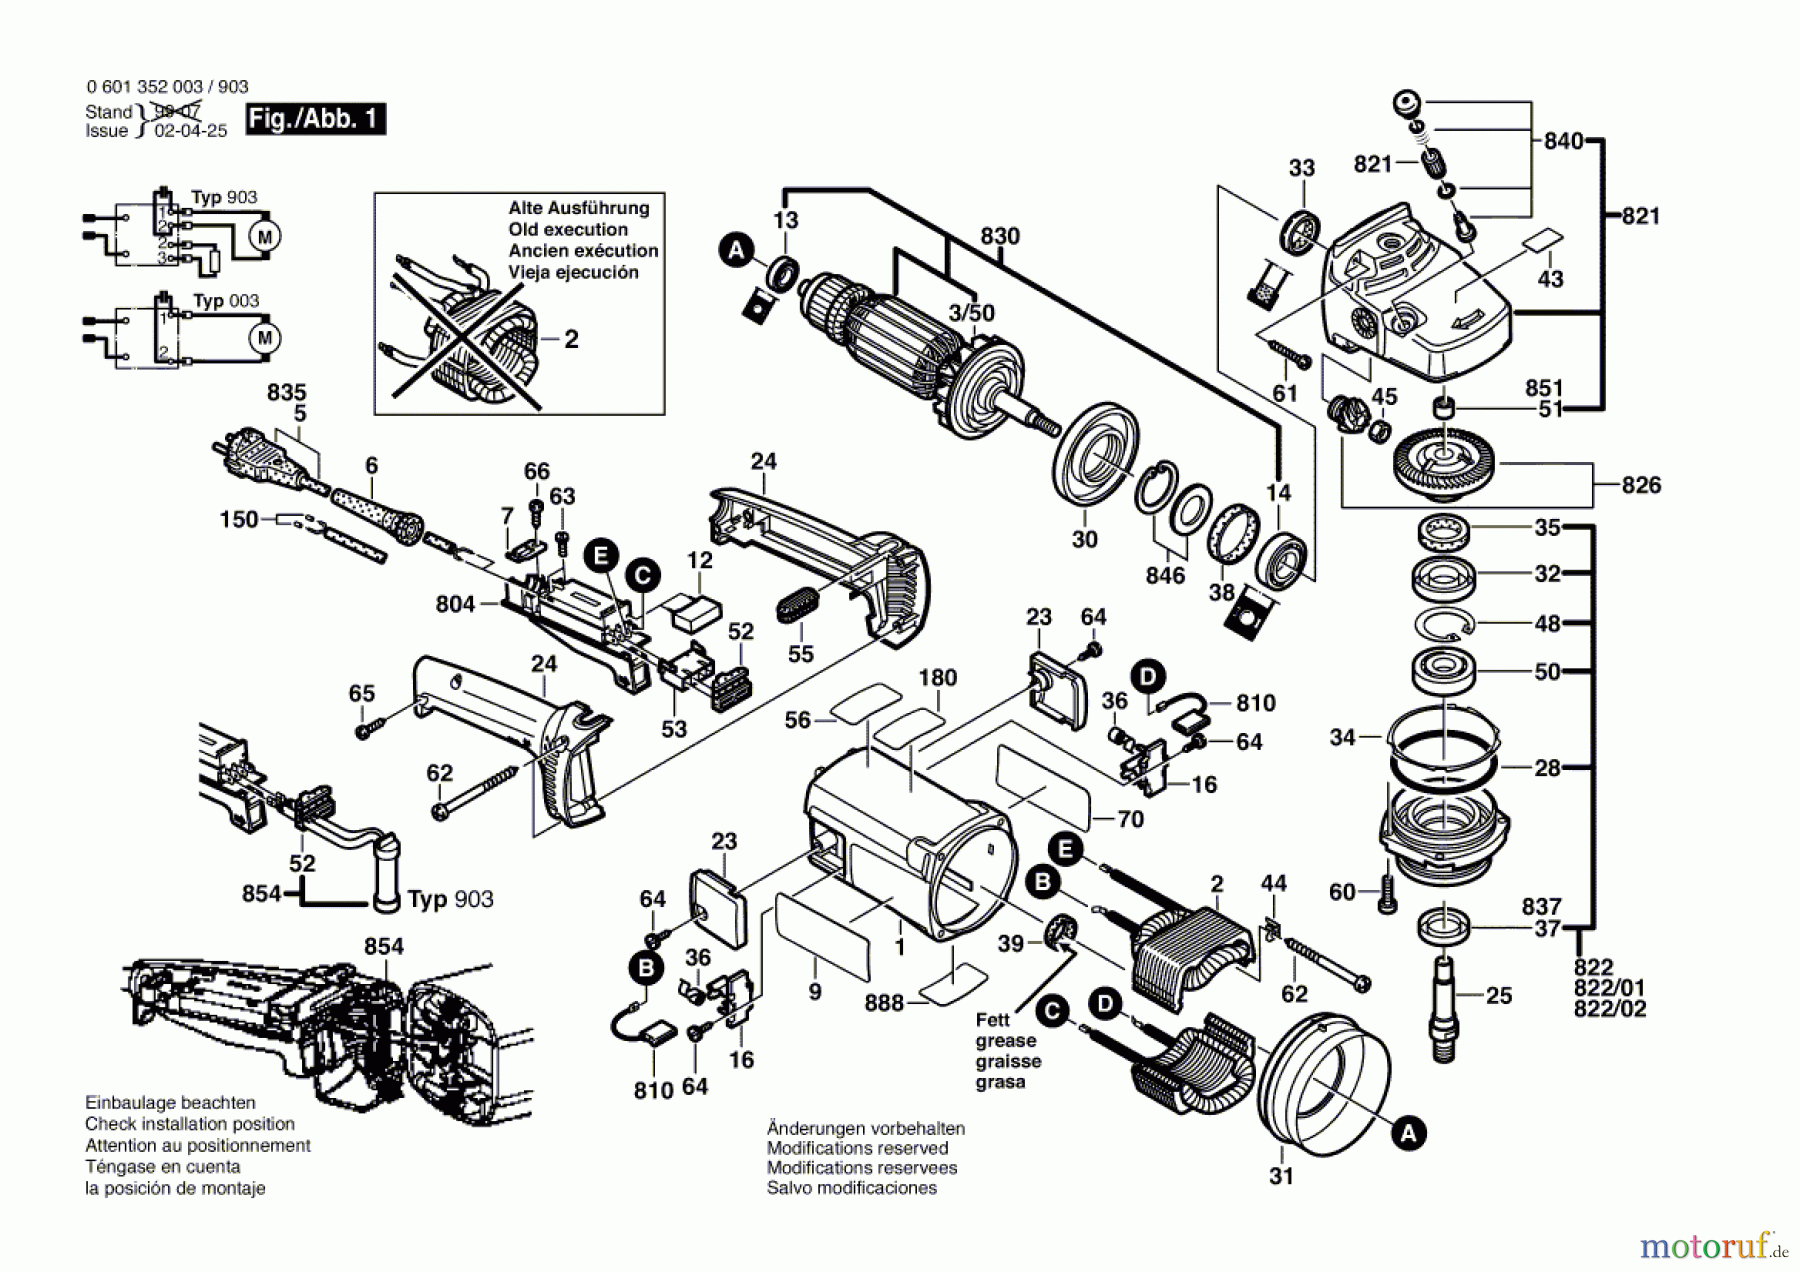  Bosch Werkzeug Winkelschleifer GWS 18-230 Seite 1